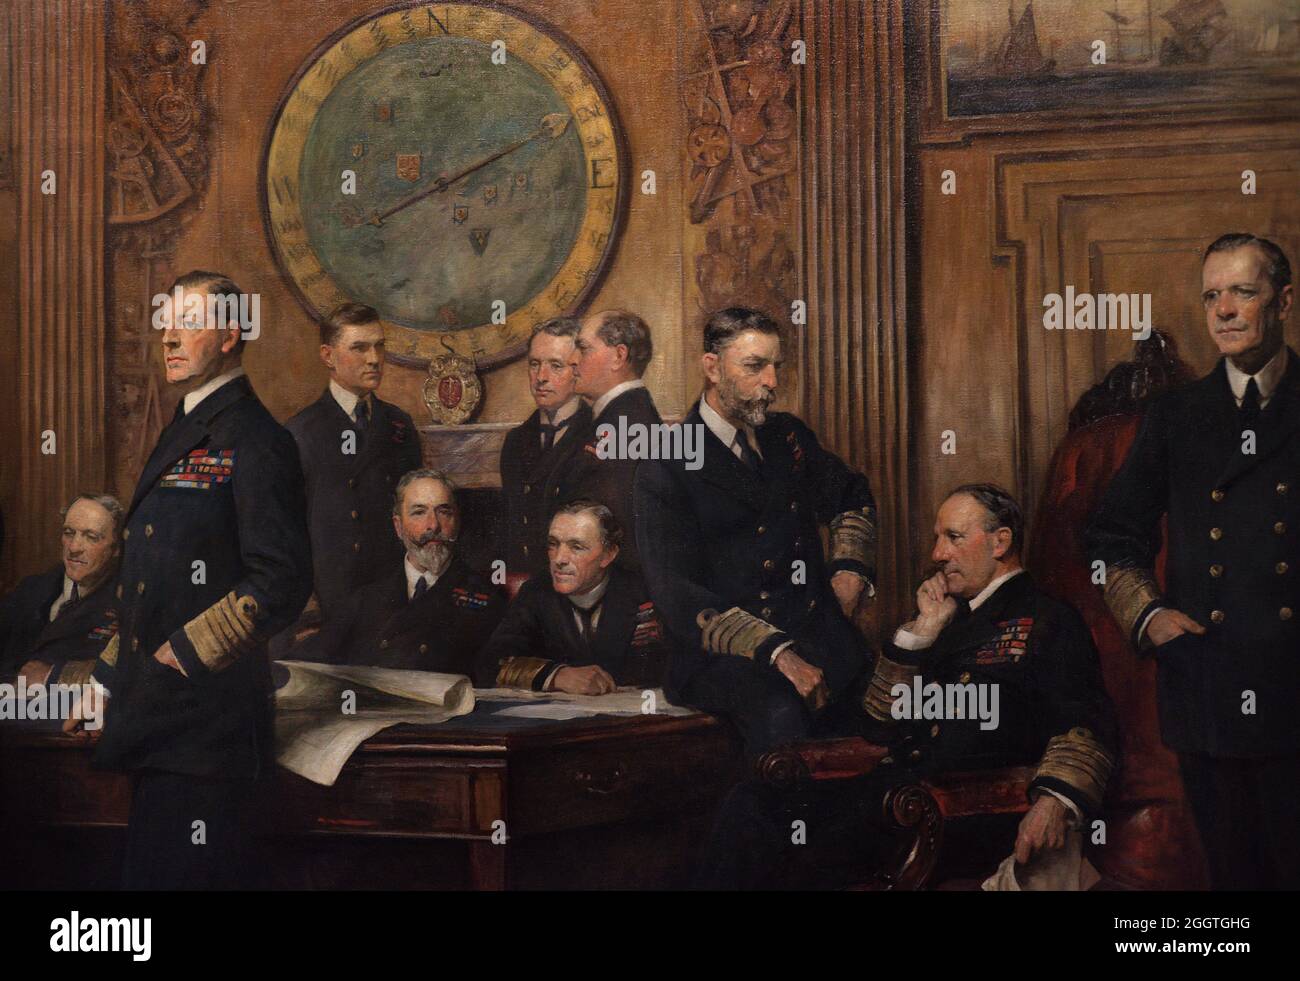 Oficiales Navales de la Primera Guerra Mundial Pintura de Arthur Stockdale COPE (1857-1940). Óleo sobre lienzo (264,1 x 514,4 cm), 1921. Detalle. Galería Nacional de Retratos. Londres, Inglaterra, Reino Unido. Foto de stock